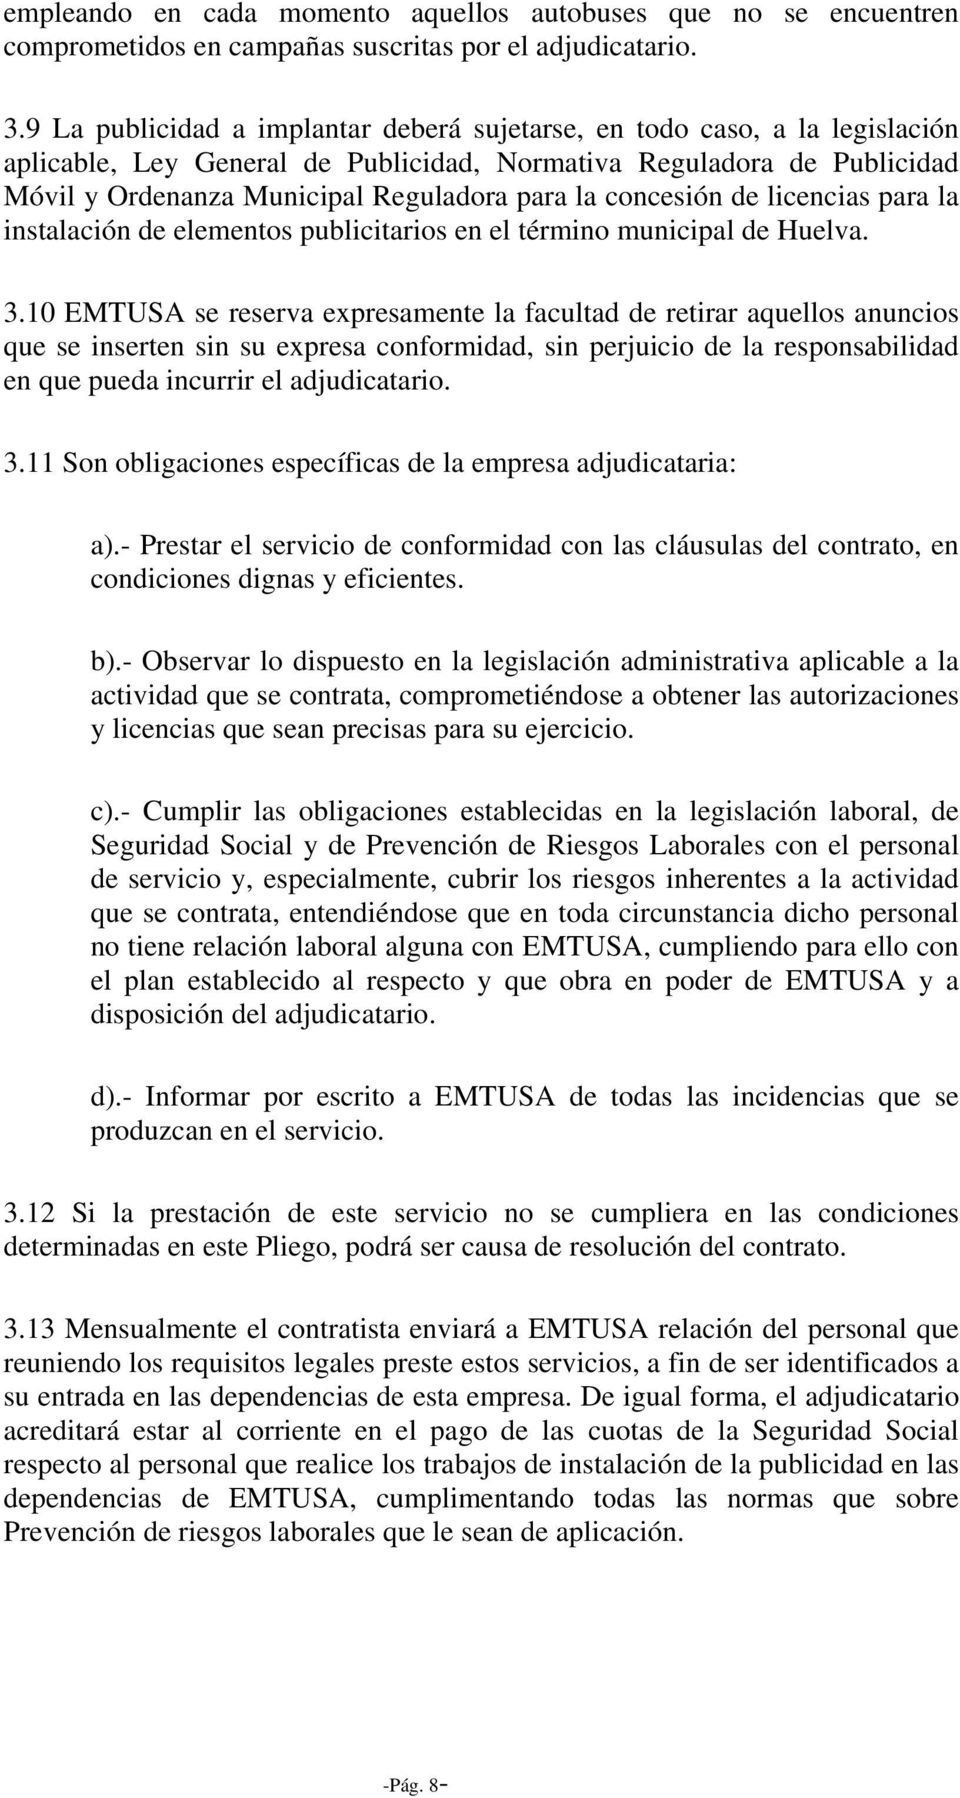 concesión de licencias para la instalación de elementos publicitarios en el término municipal de Huelva. 3.